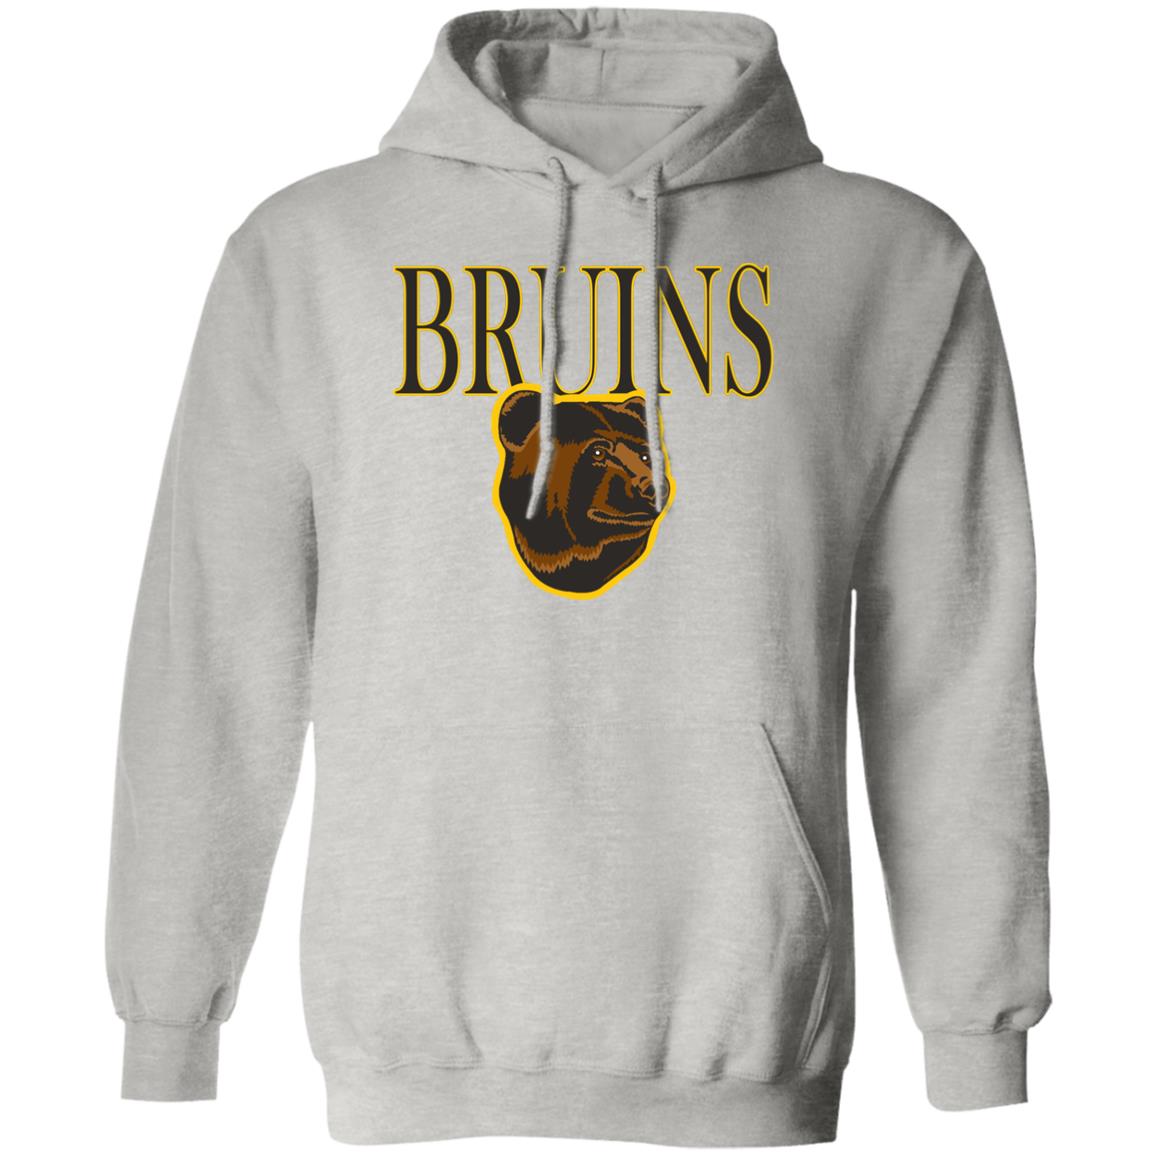 Bruins Pooh Bear Shirt,Sweater, Hoodie, And Long Sleeved, Ladies